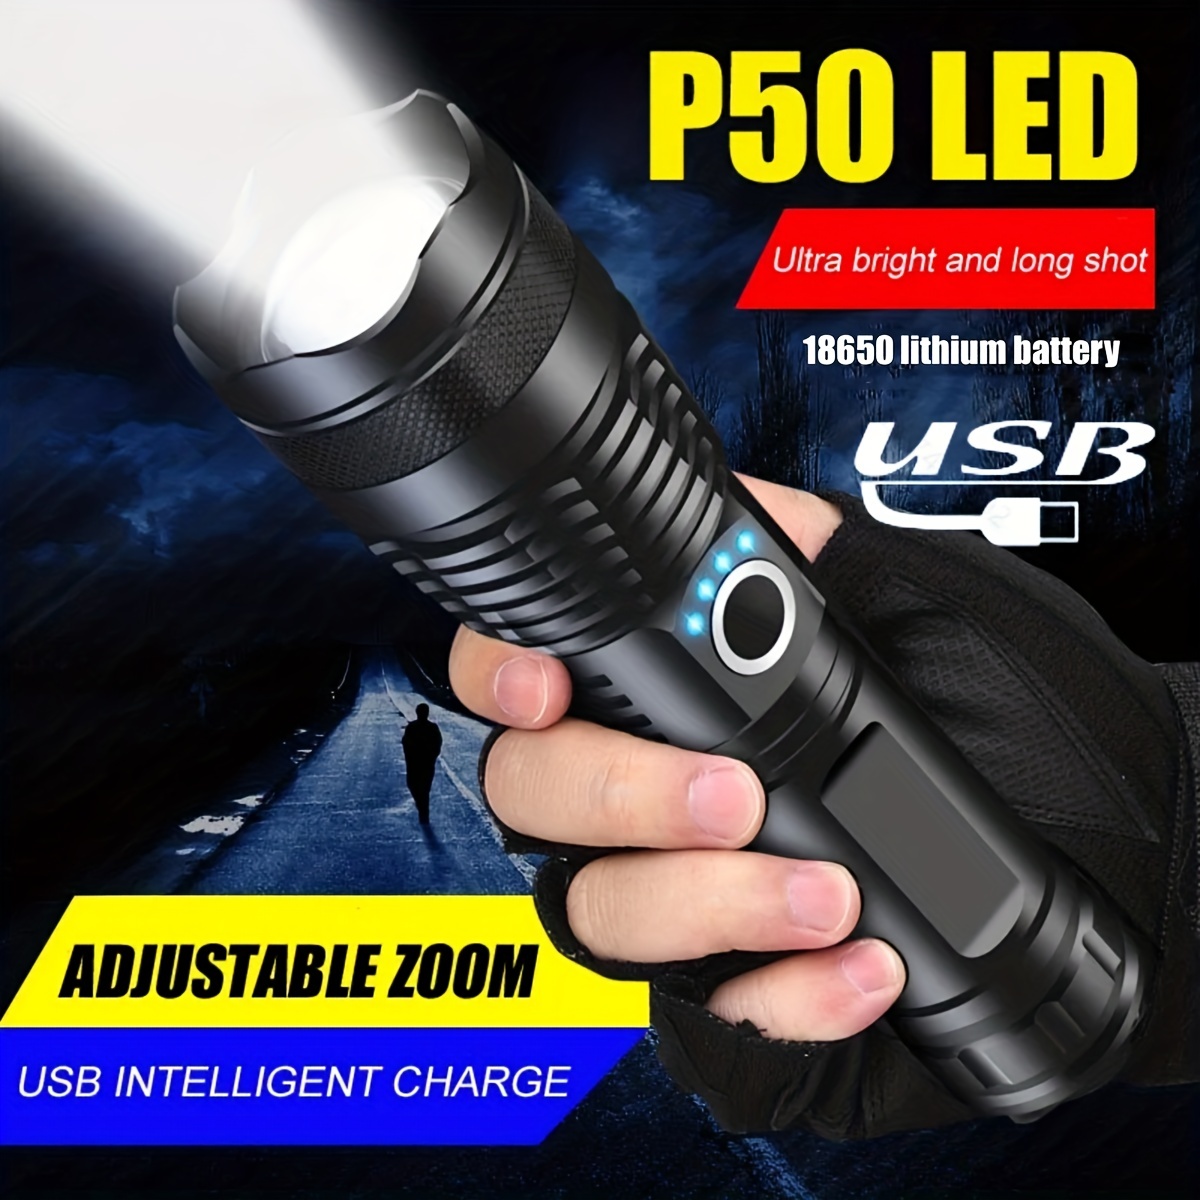 Acheter Lampe torche LED puissante rechargeable à haute lumens Xhp50